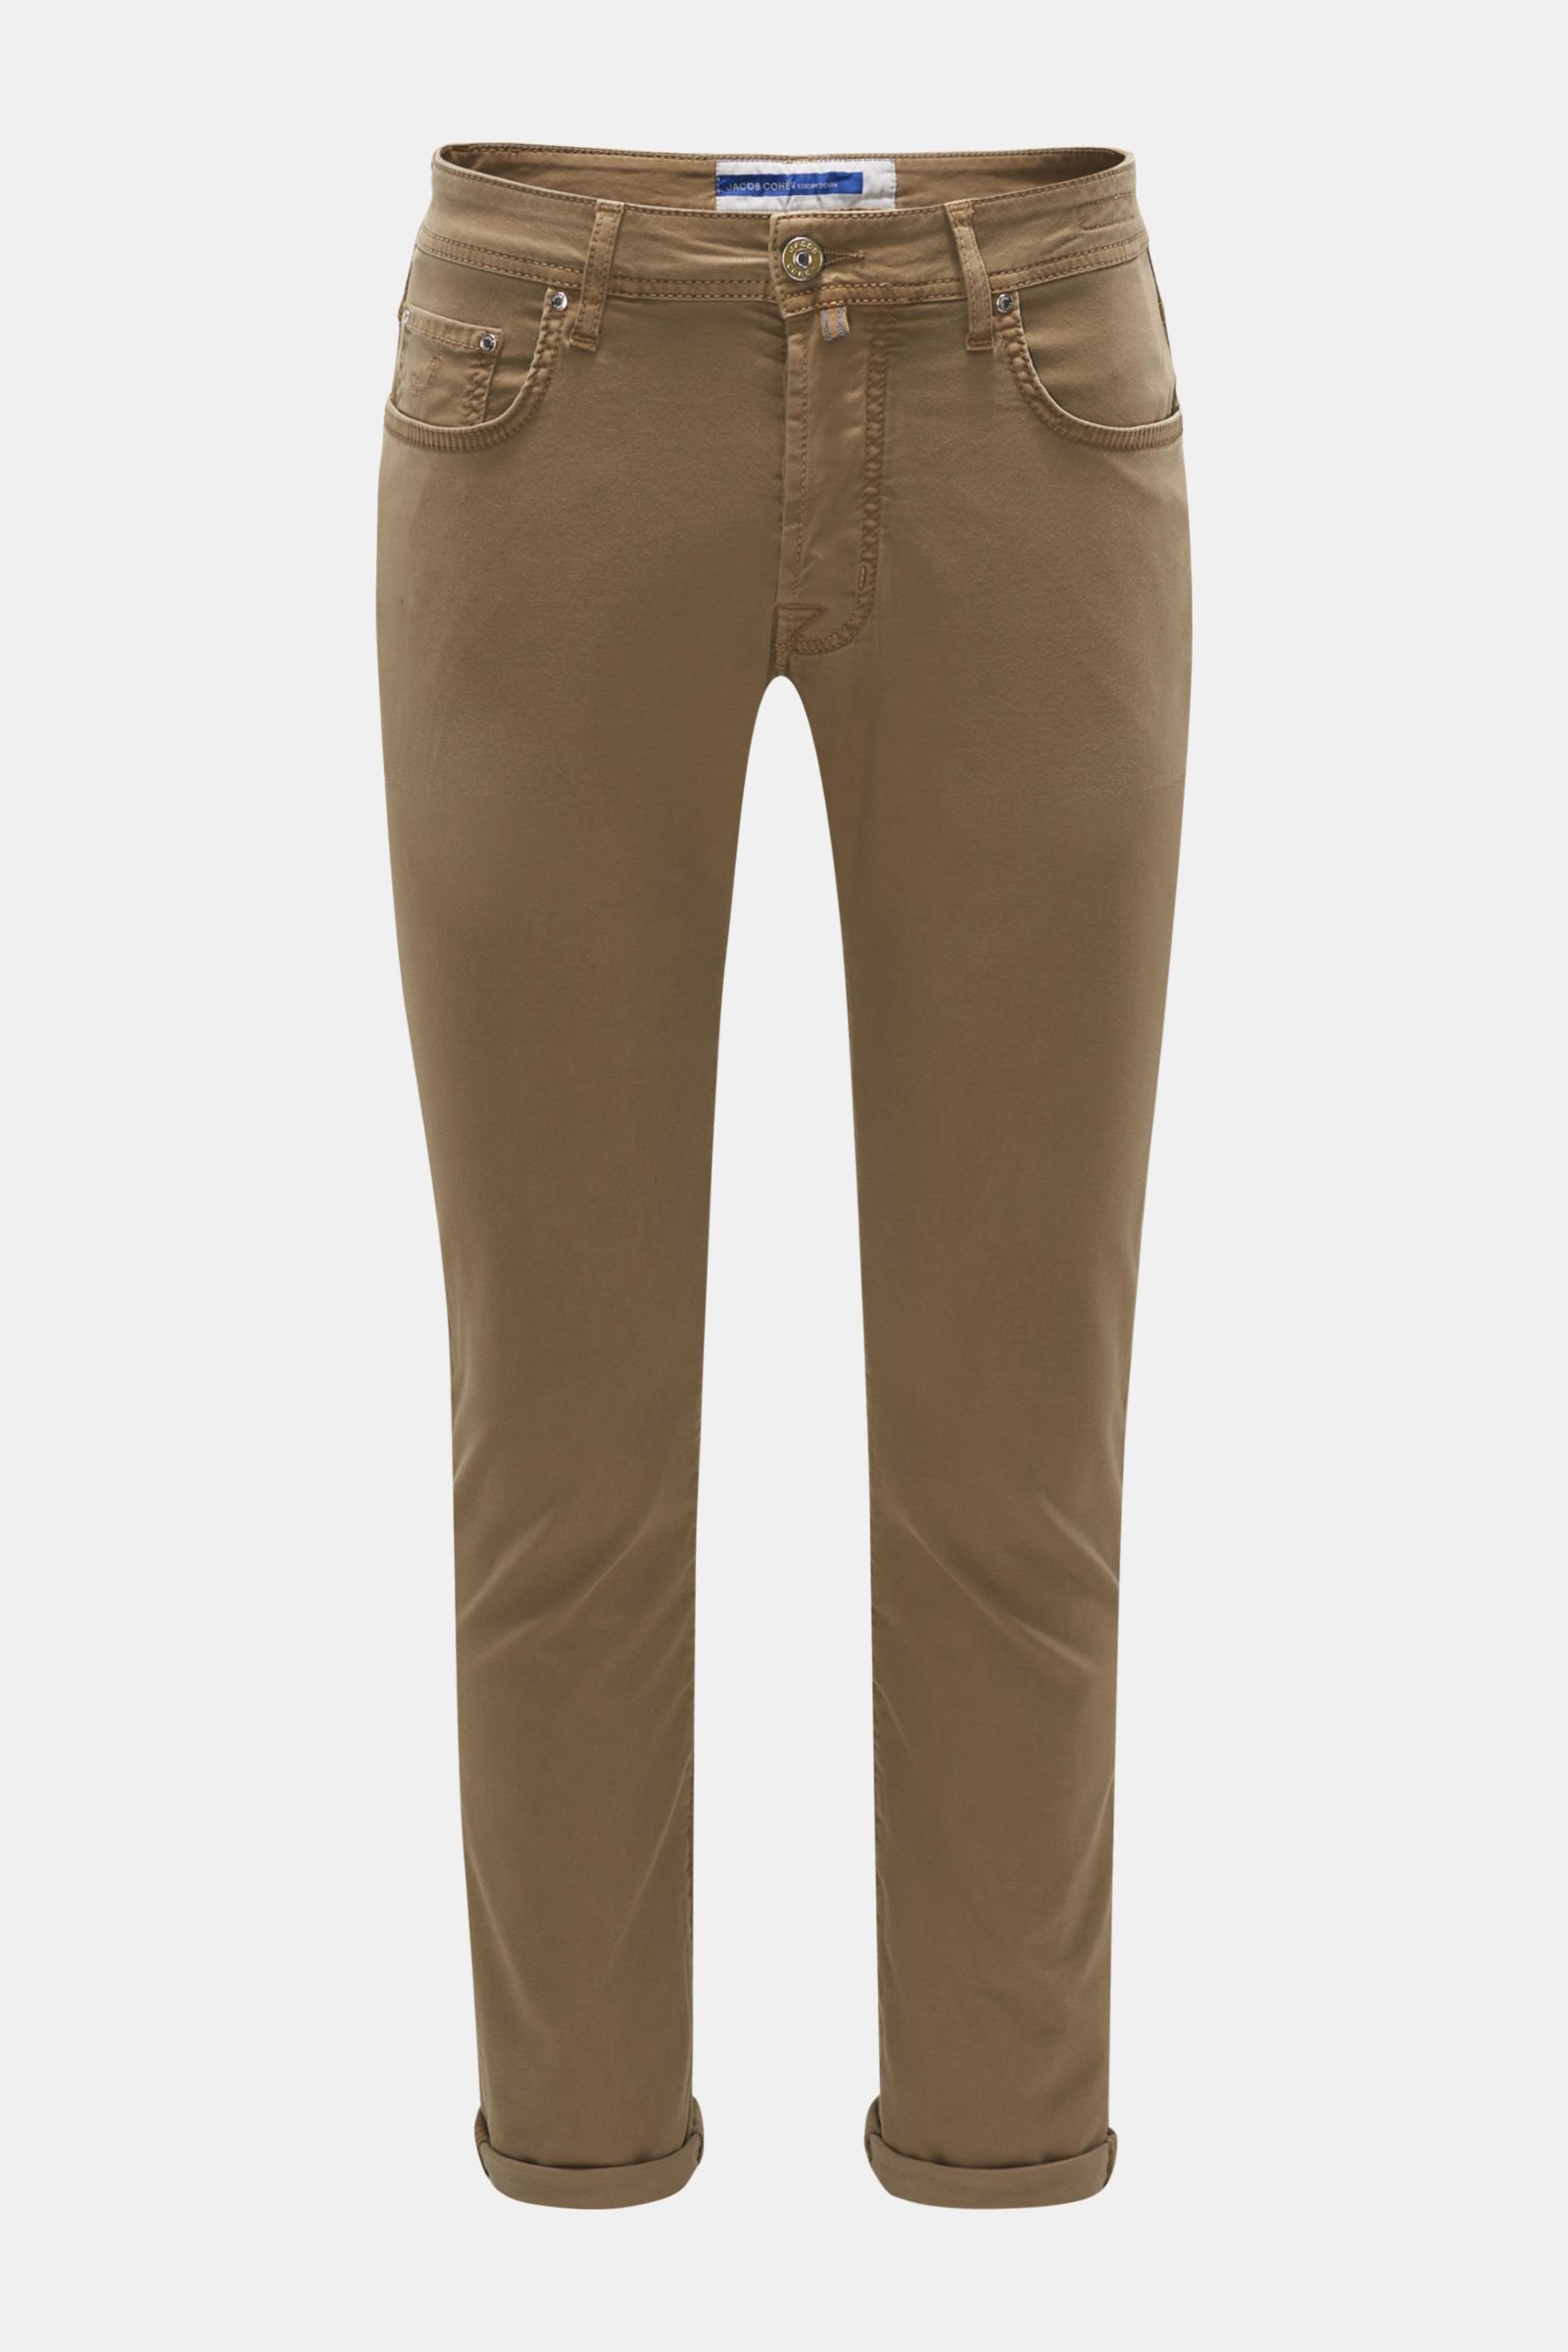 'Bard' trousers khaki (previously J688)